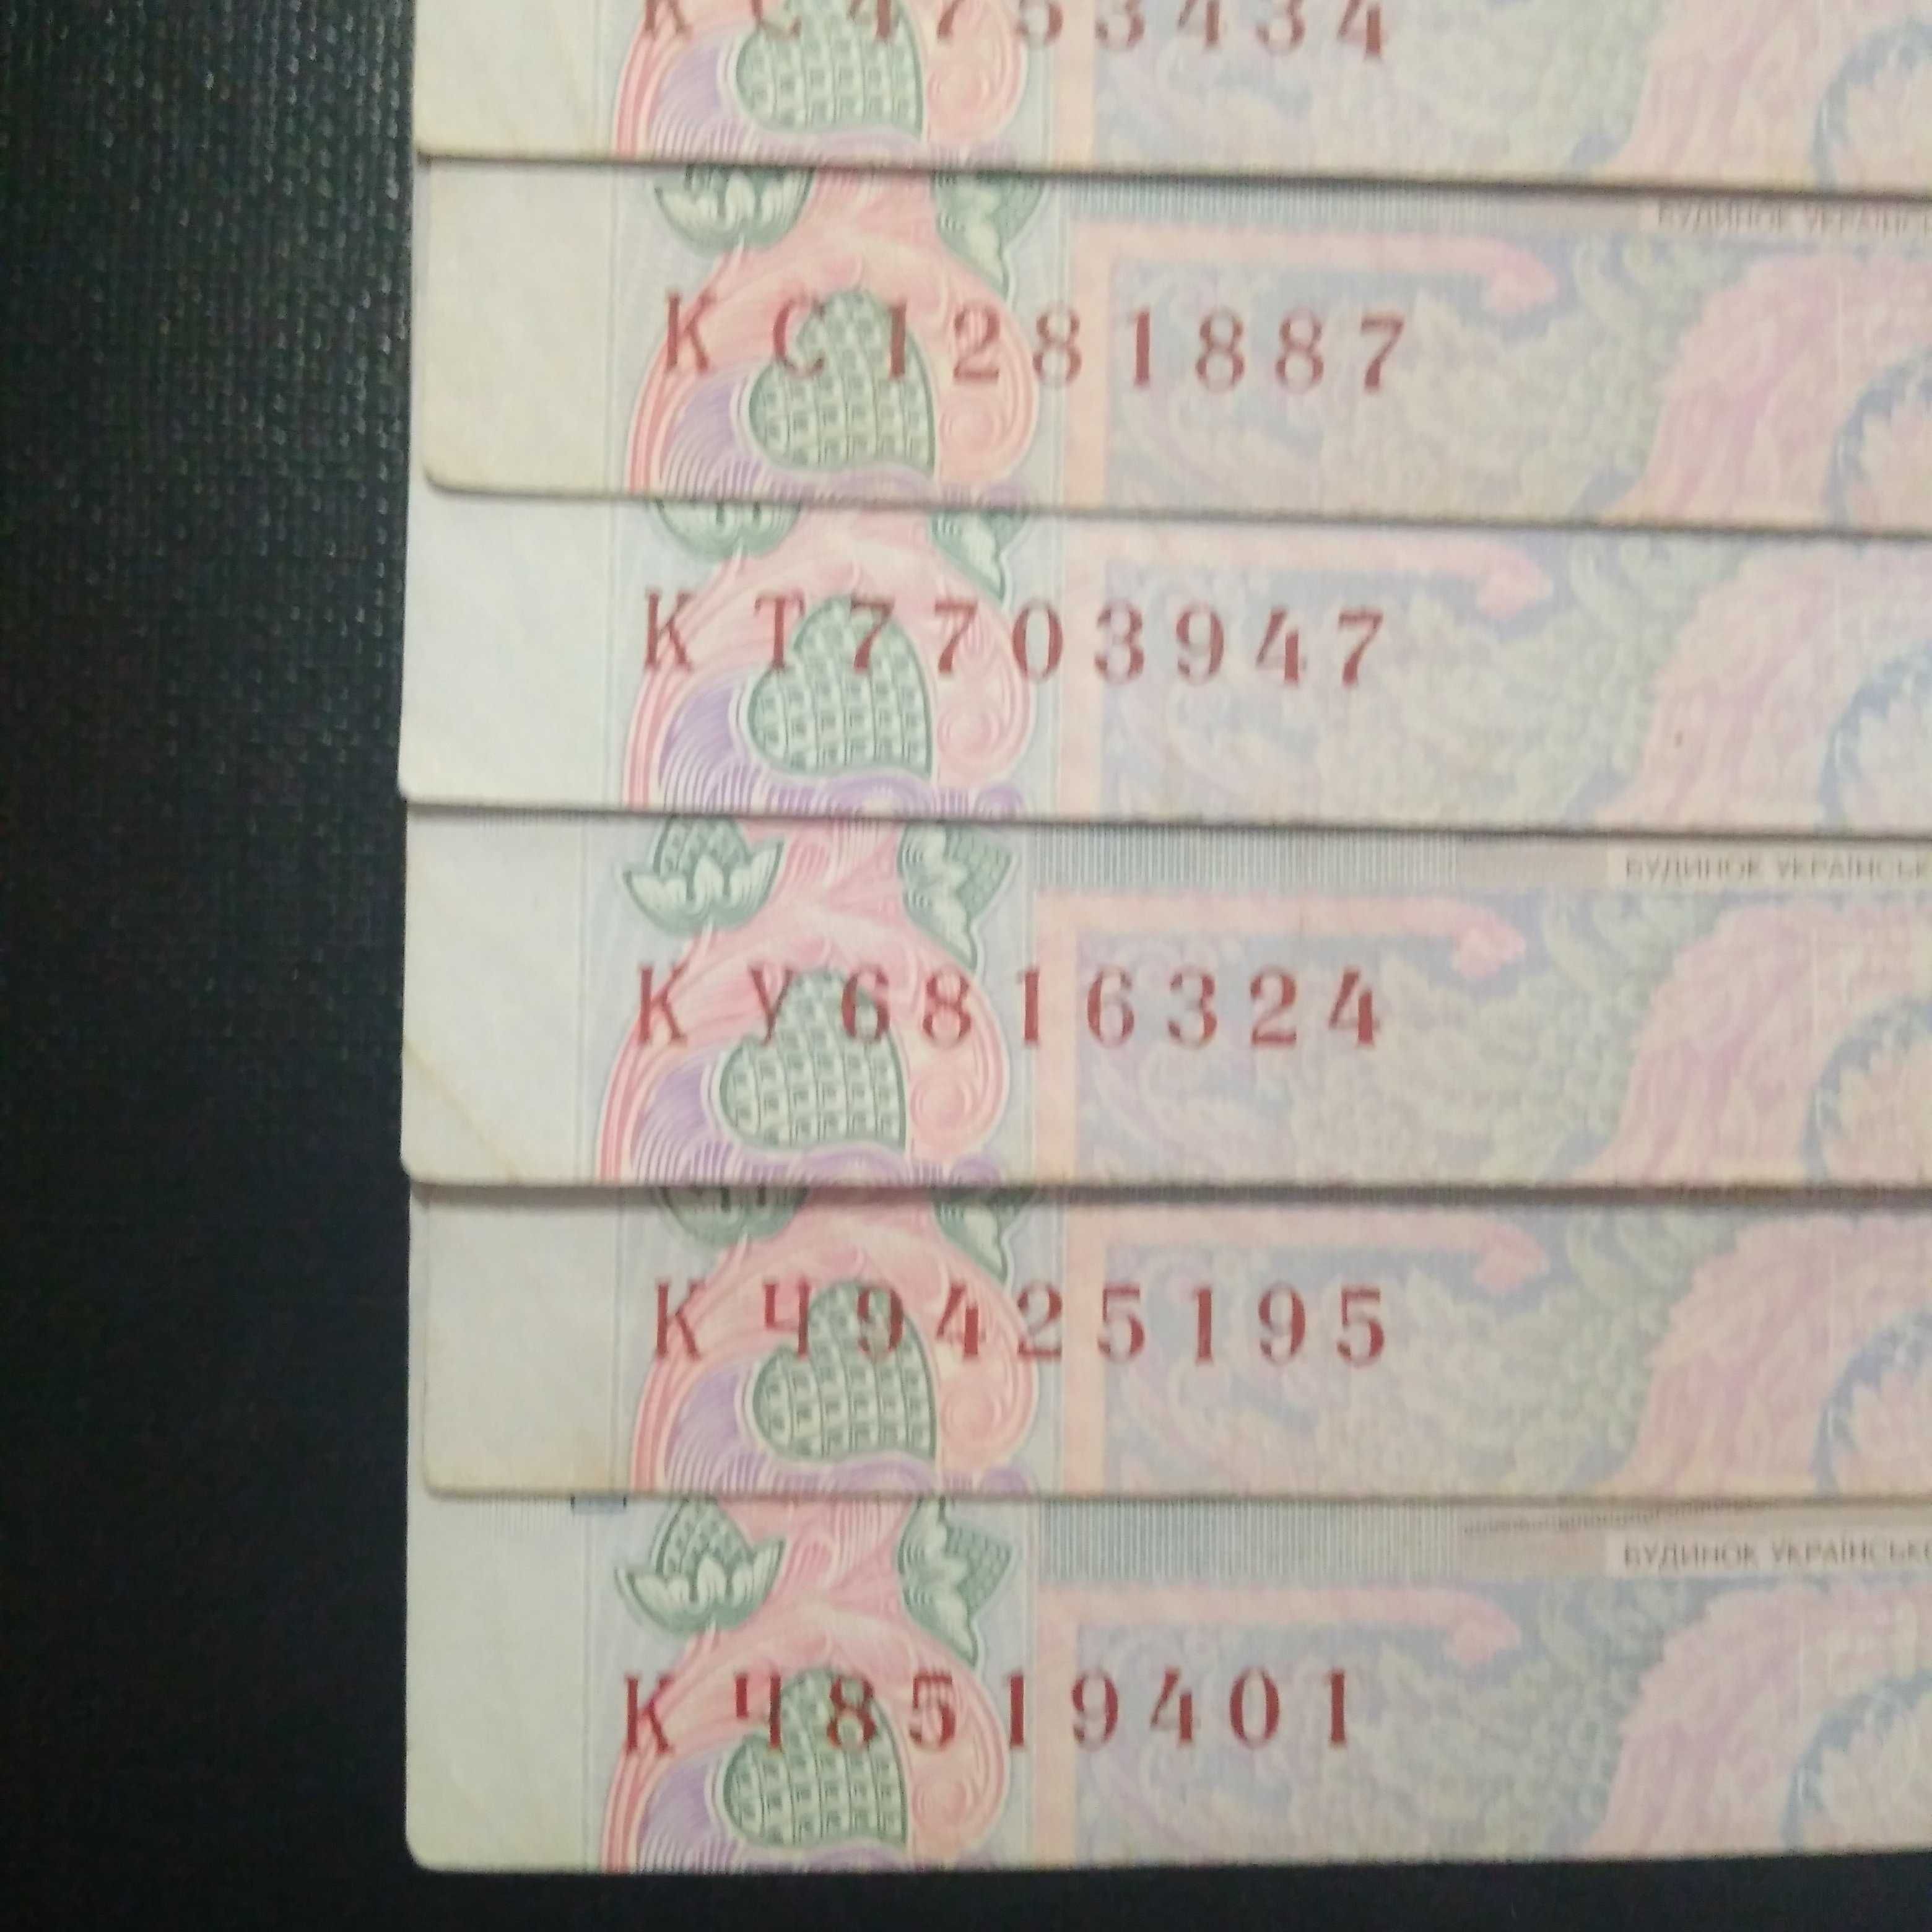 Бона банкнота 50 гривен 2011 Арбузов / гривень грн разные серии